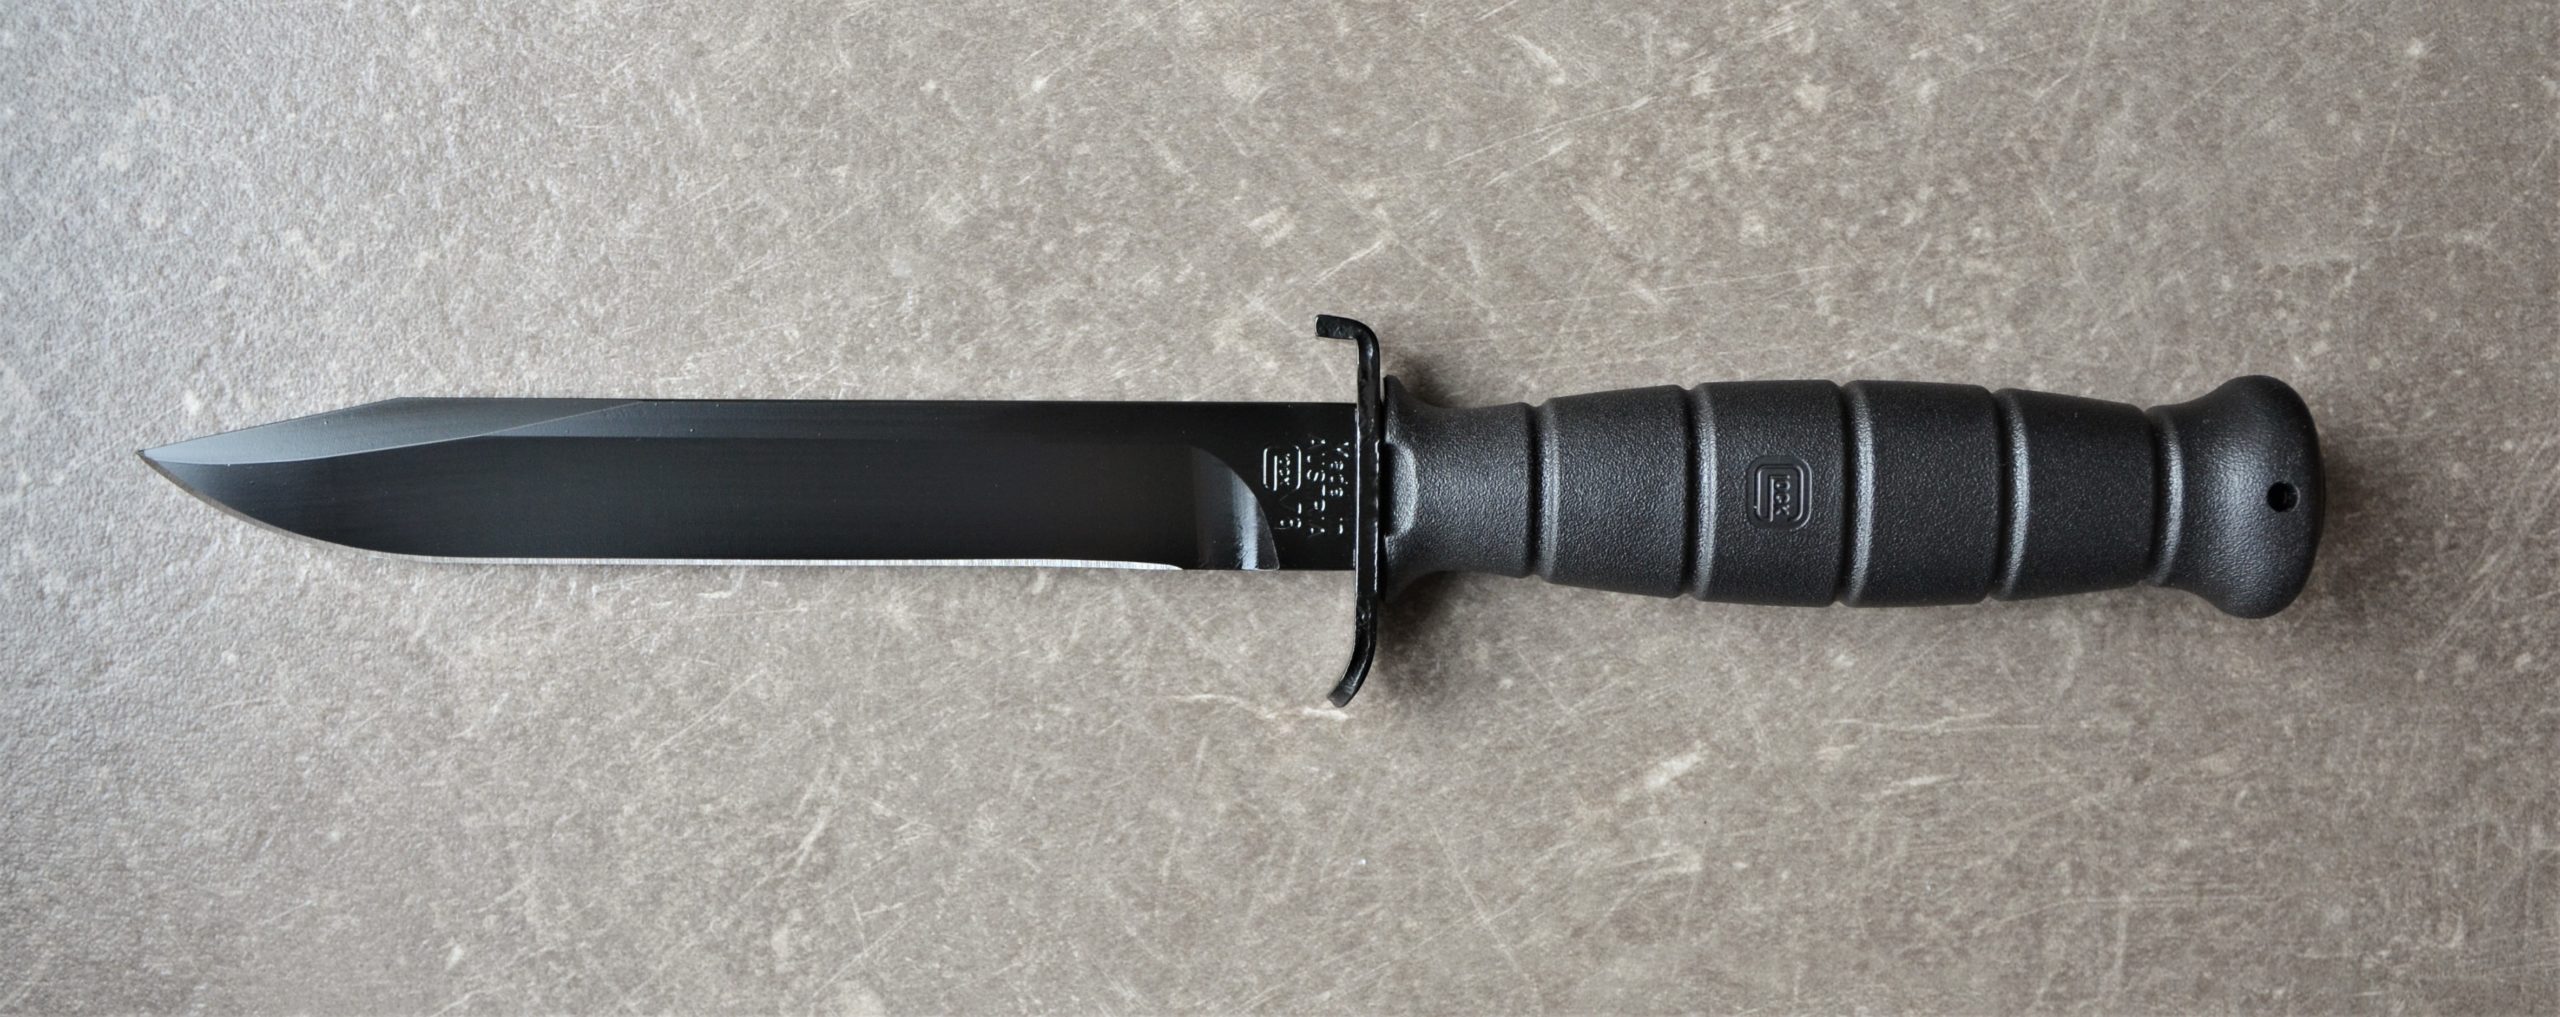 Glock Feldmesser FM 78 schwarz - Militärisches Mehrzweckmesser